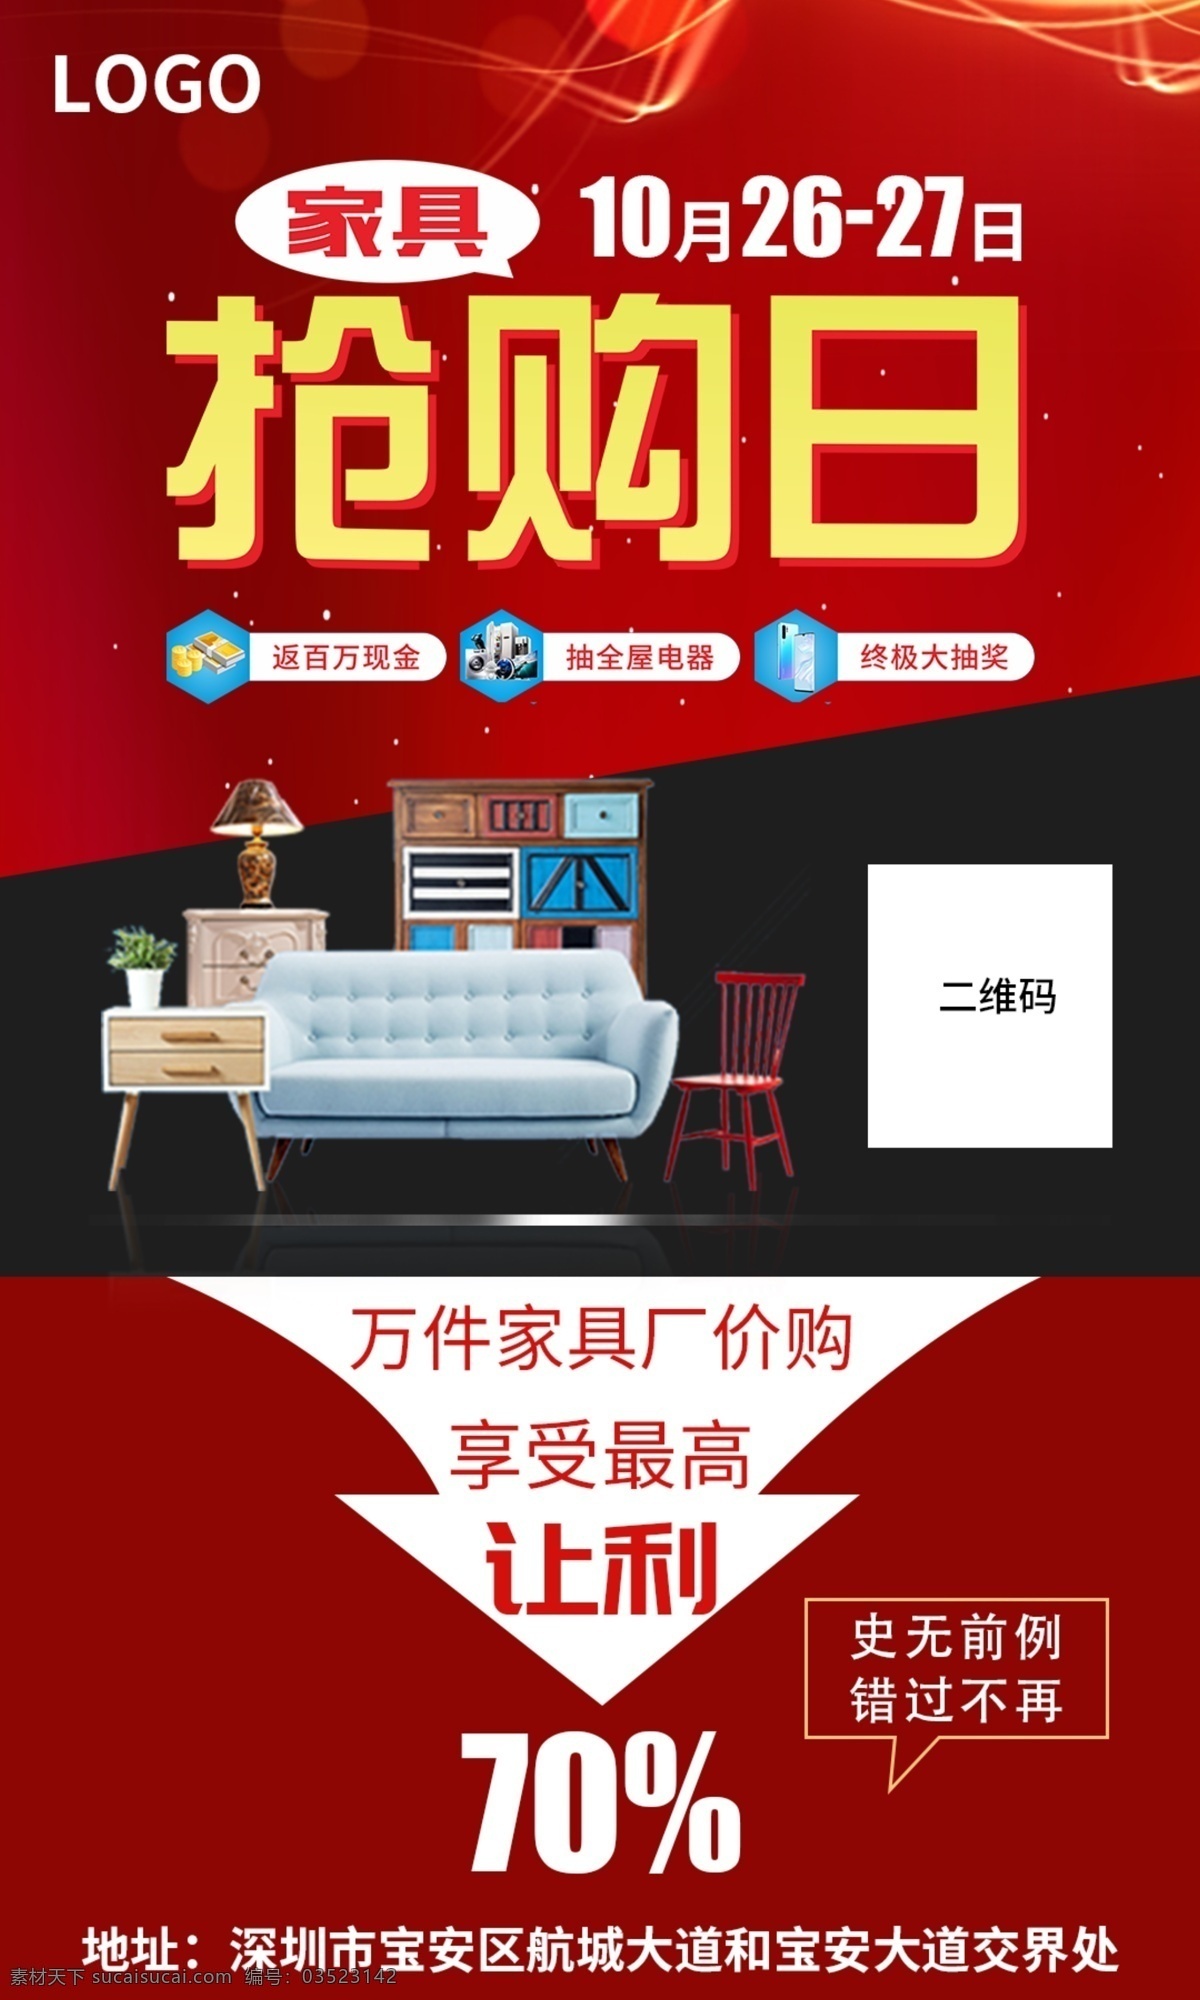 家具抢购日 文字排版 海报 红色 家具 广告 创意 让利